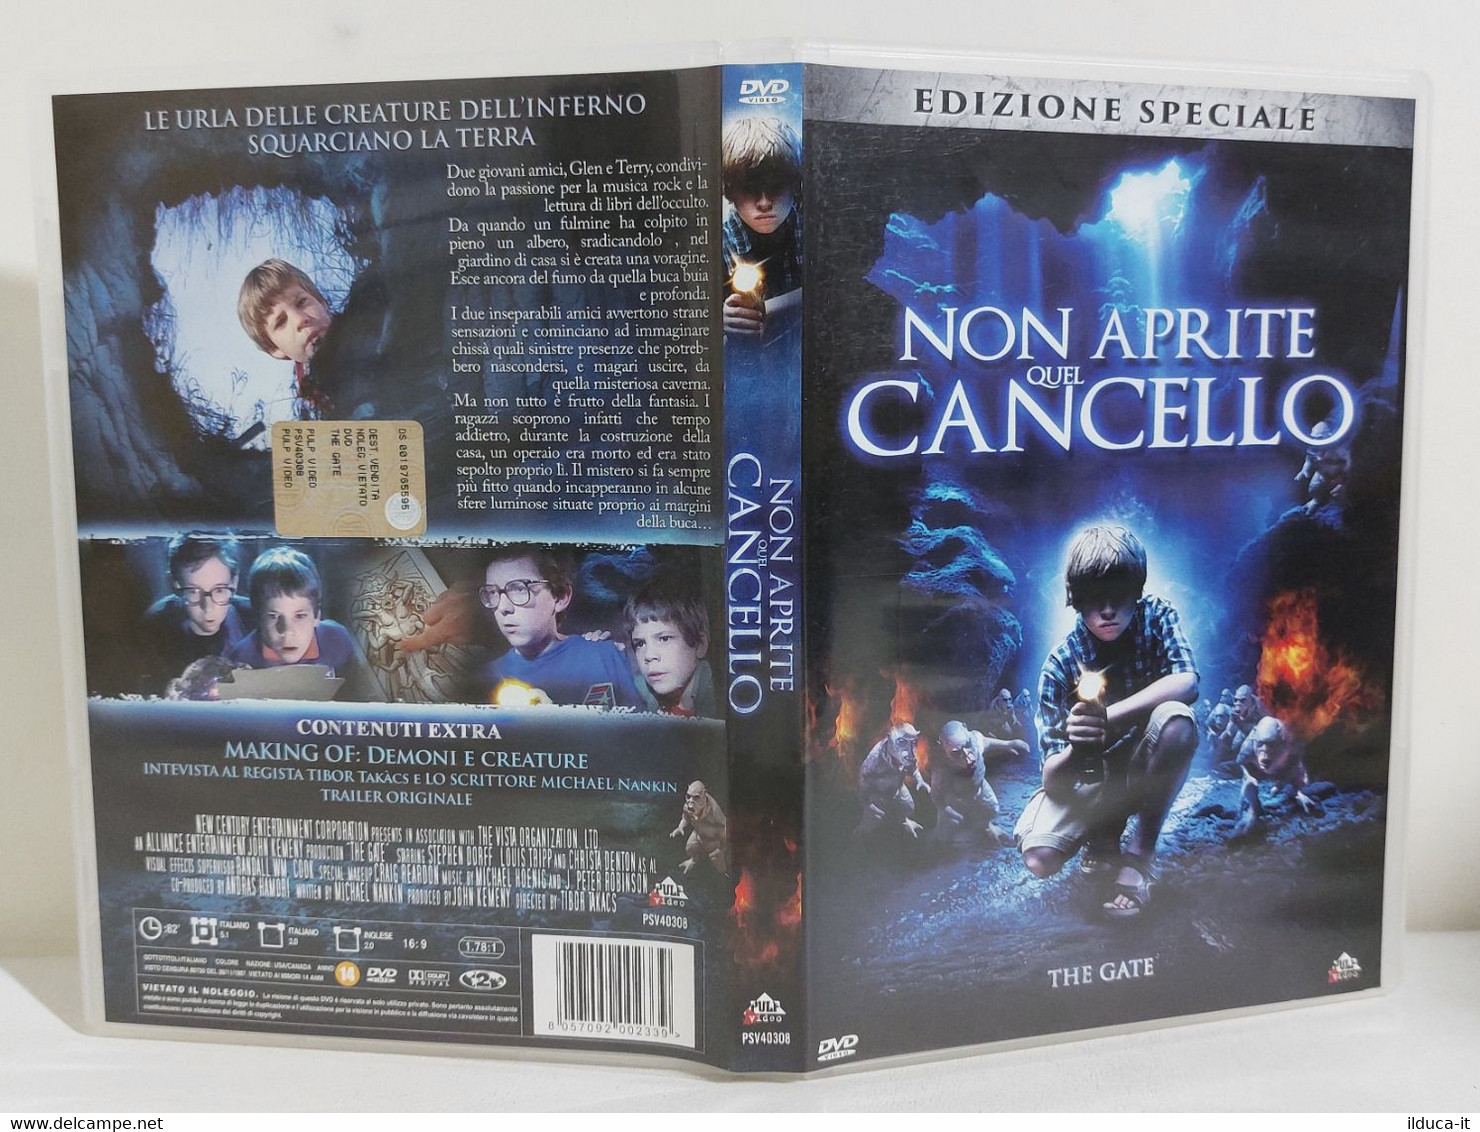 I107622 DVD Edizione Speciale - NON APRITE QUEL CANCELLO (1987) - Stephen Dorff - Horror